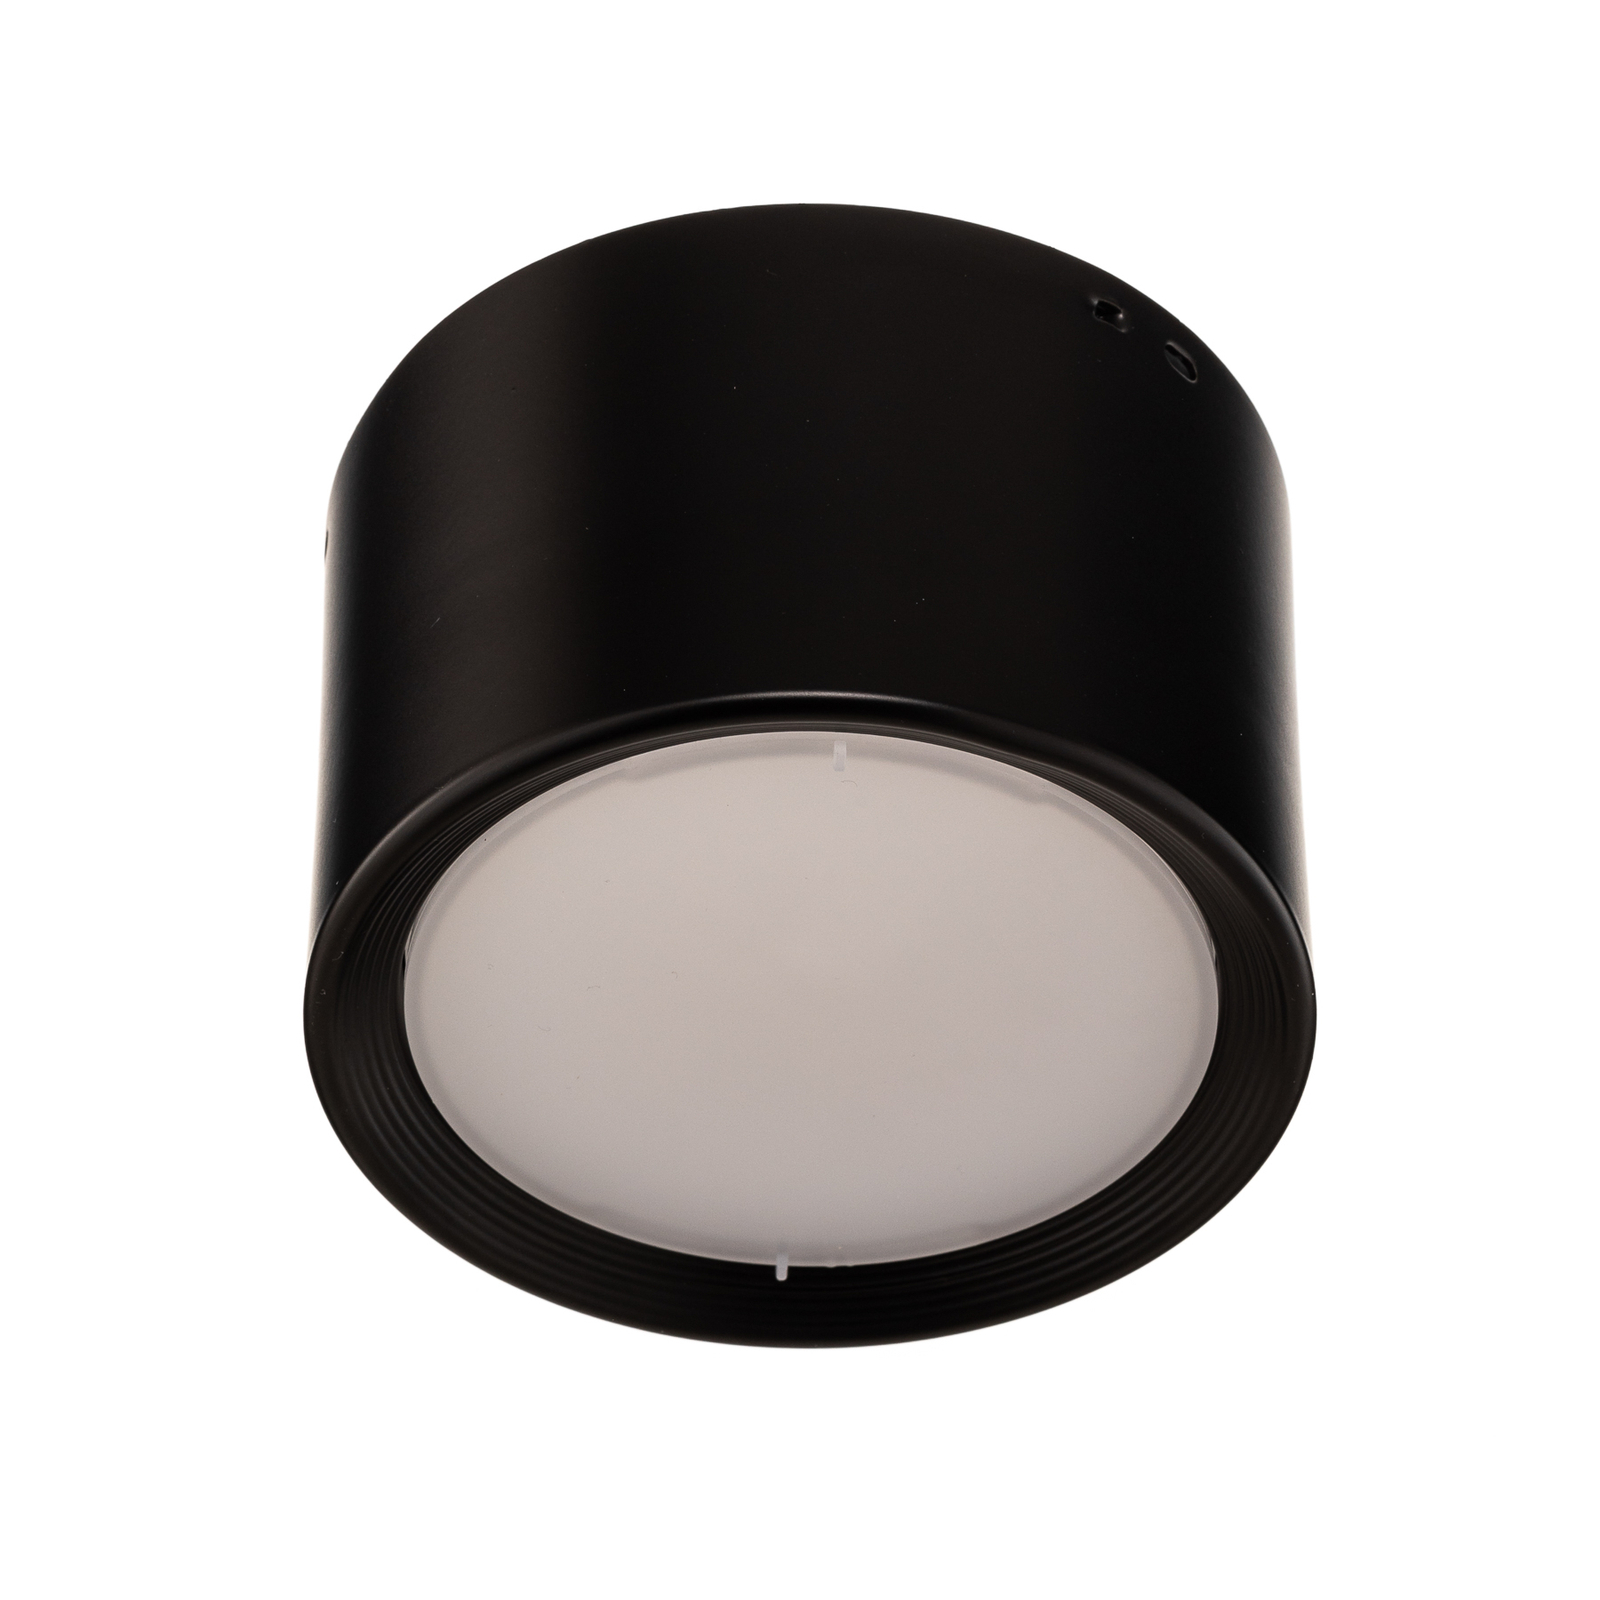 Faretto Ita LED nero con diffusore, Ø 12 cm